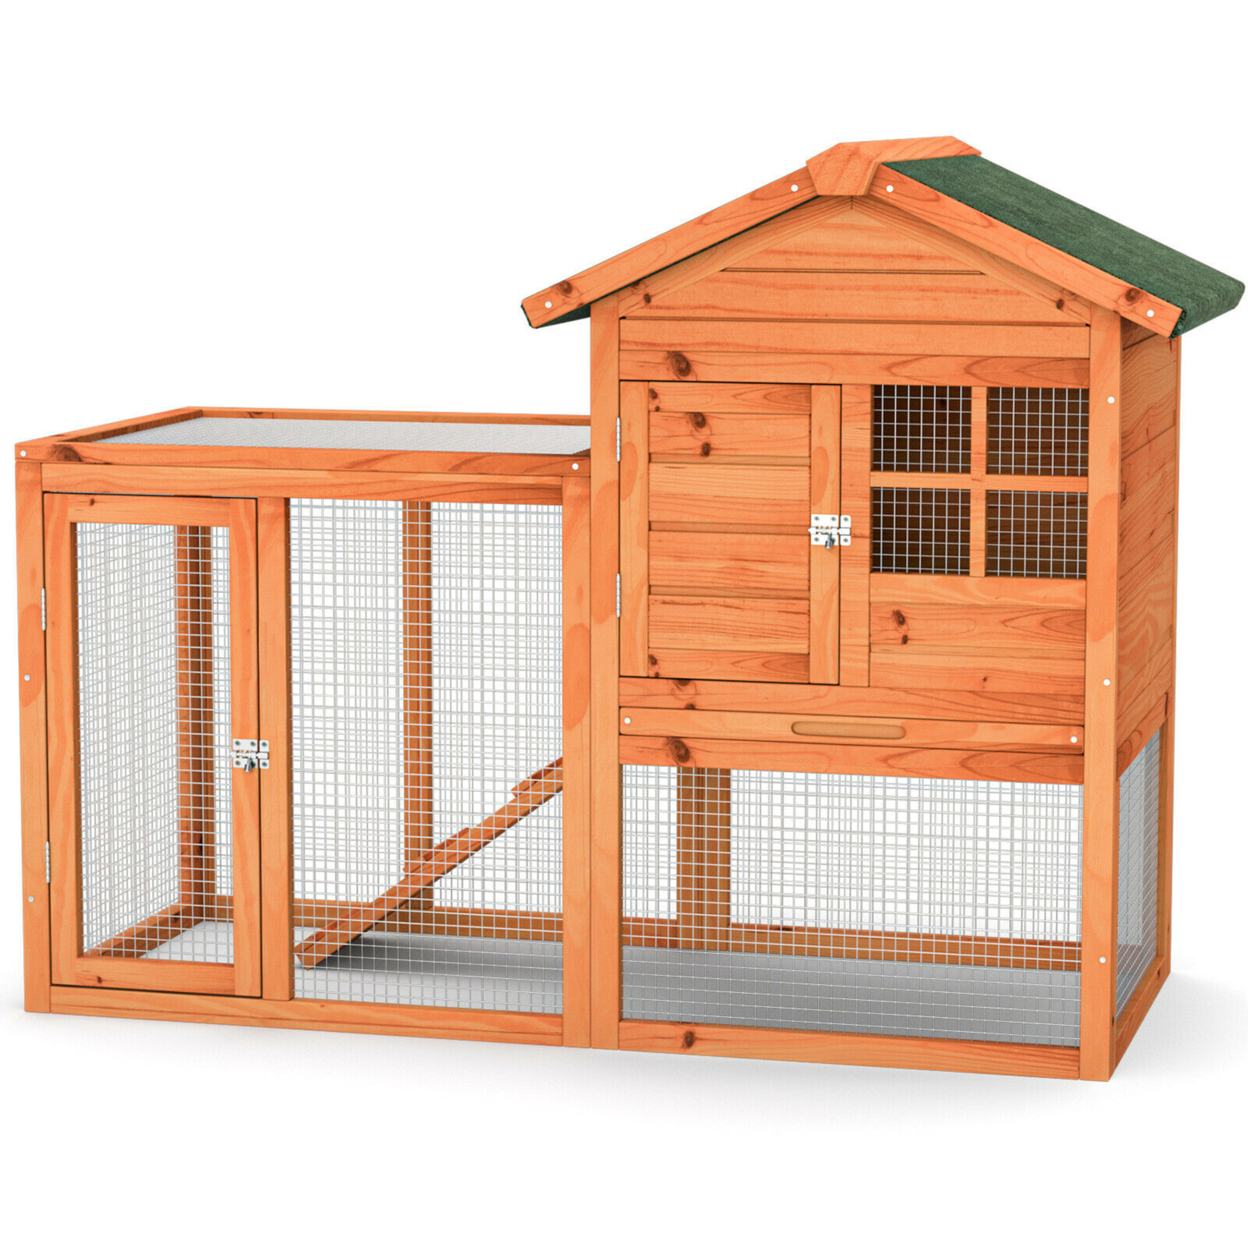 Wooden Chicken Coop Outdoor & Indoor Small Rabbit Hutch W/ Run - Grey